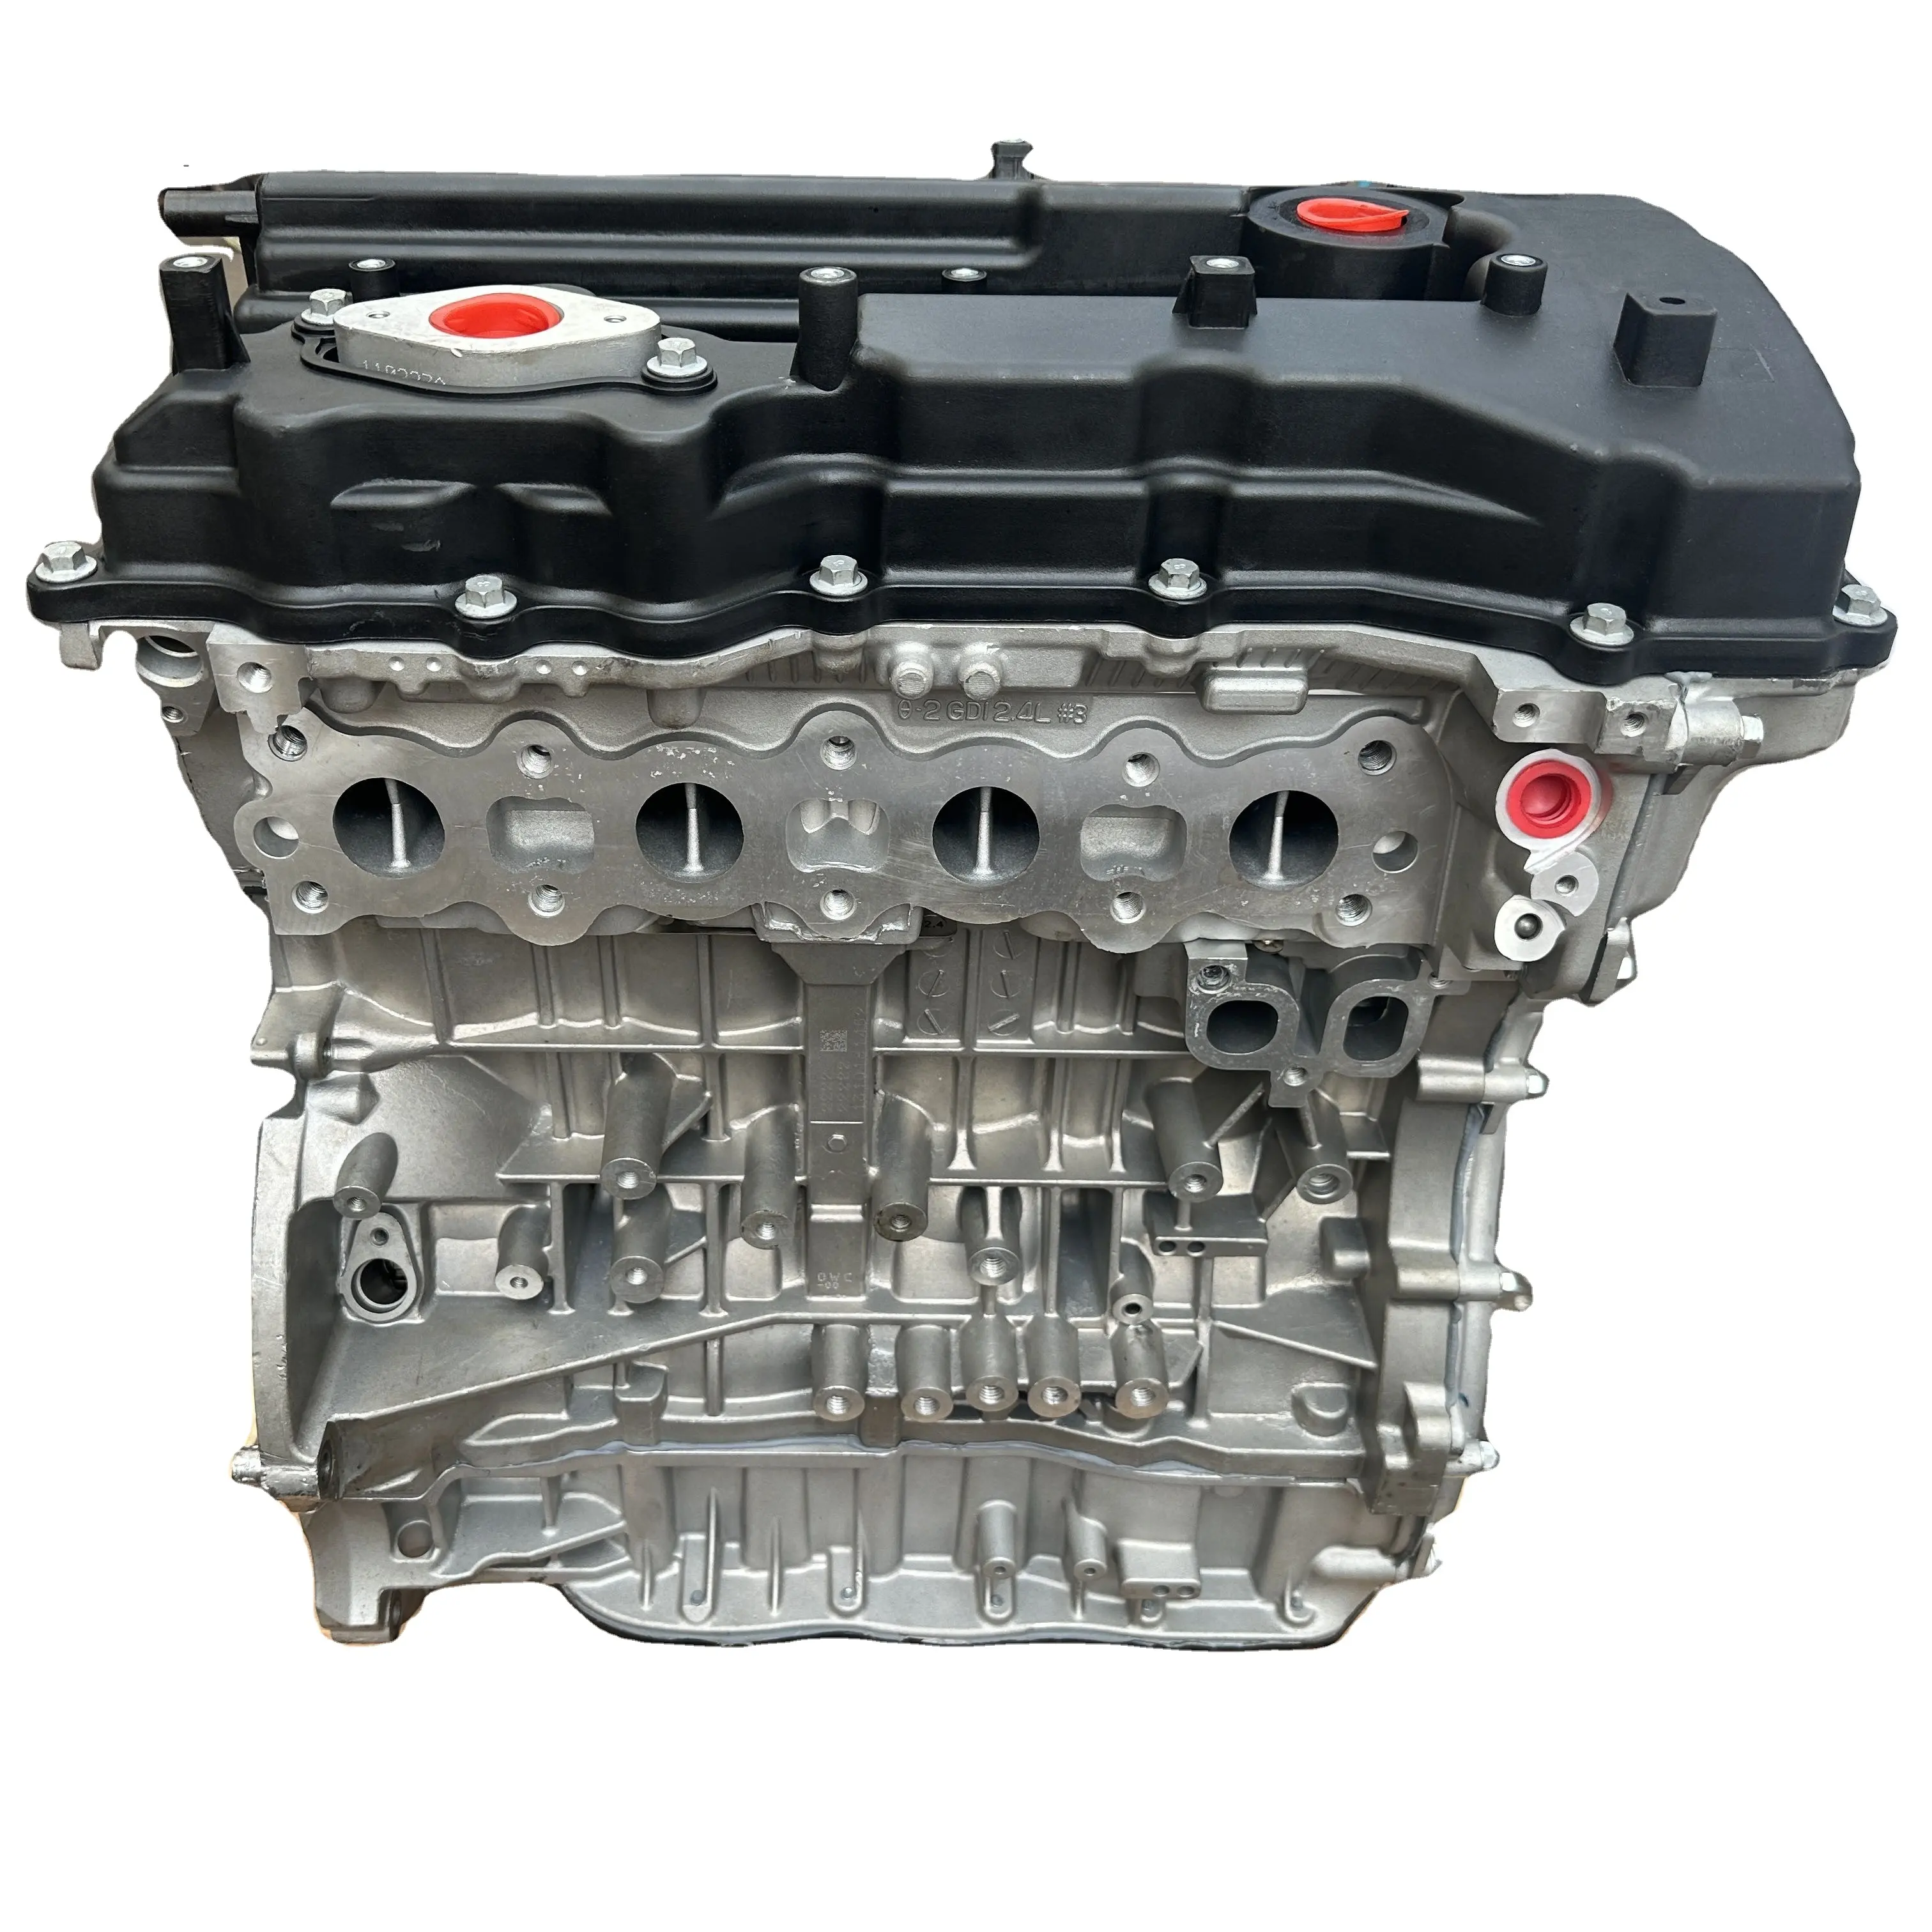 Novo Motor G4KJ para HYUNDAI TOHENS Coupe 2.4.L Marca de Alta Qualidade 12 Caixa De Madeira I20 A Gás/Gasolina Motor 1.6l Motor Japonês 1.6